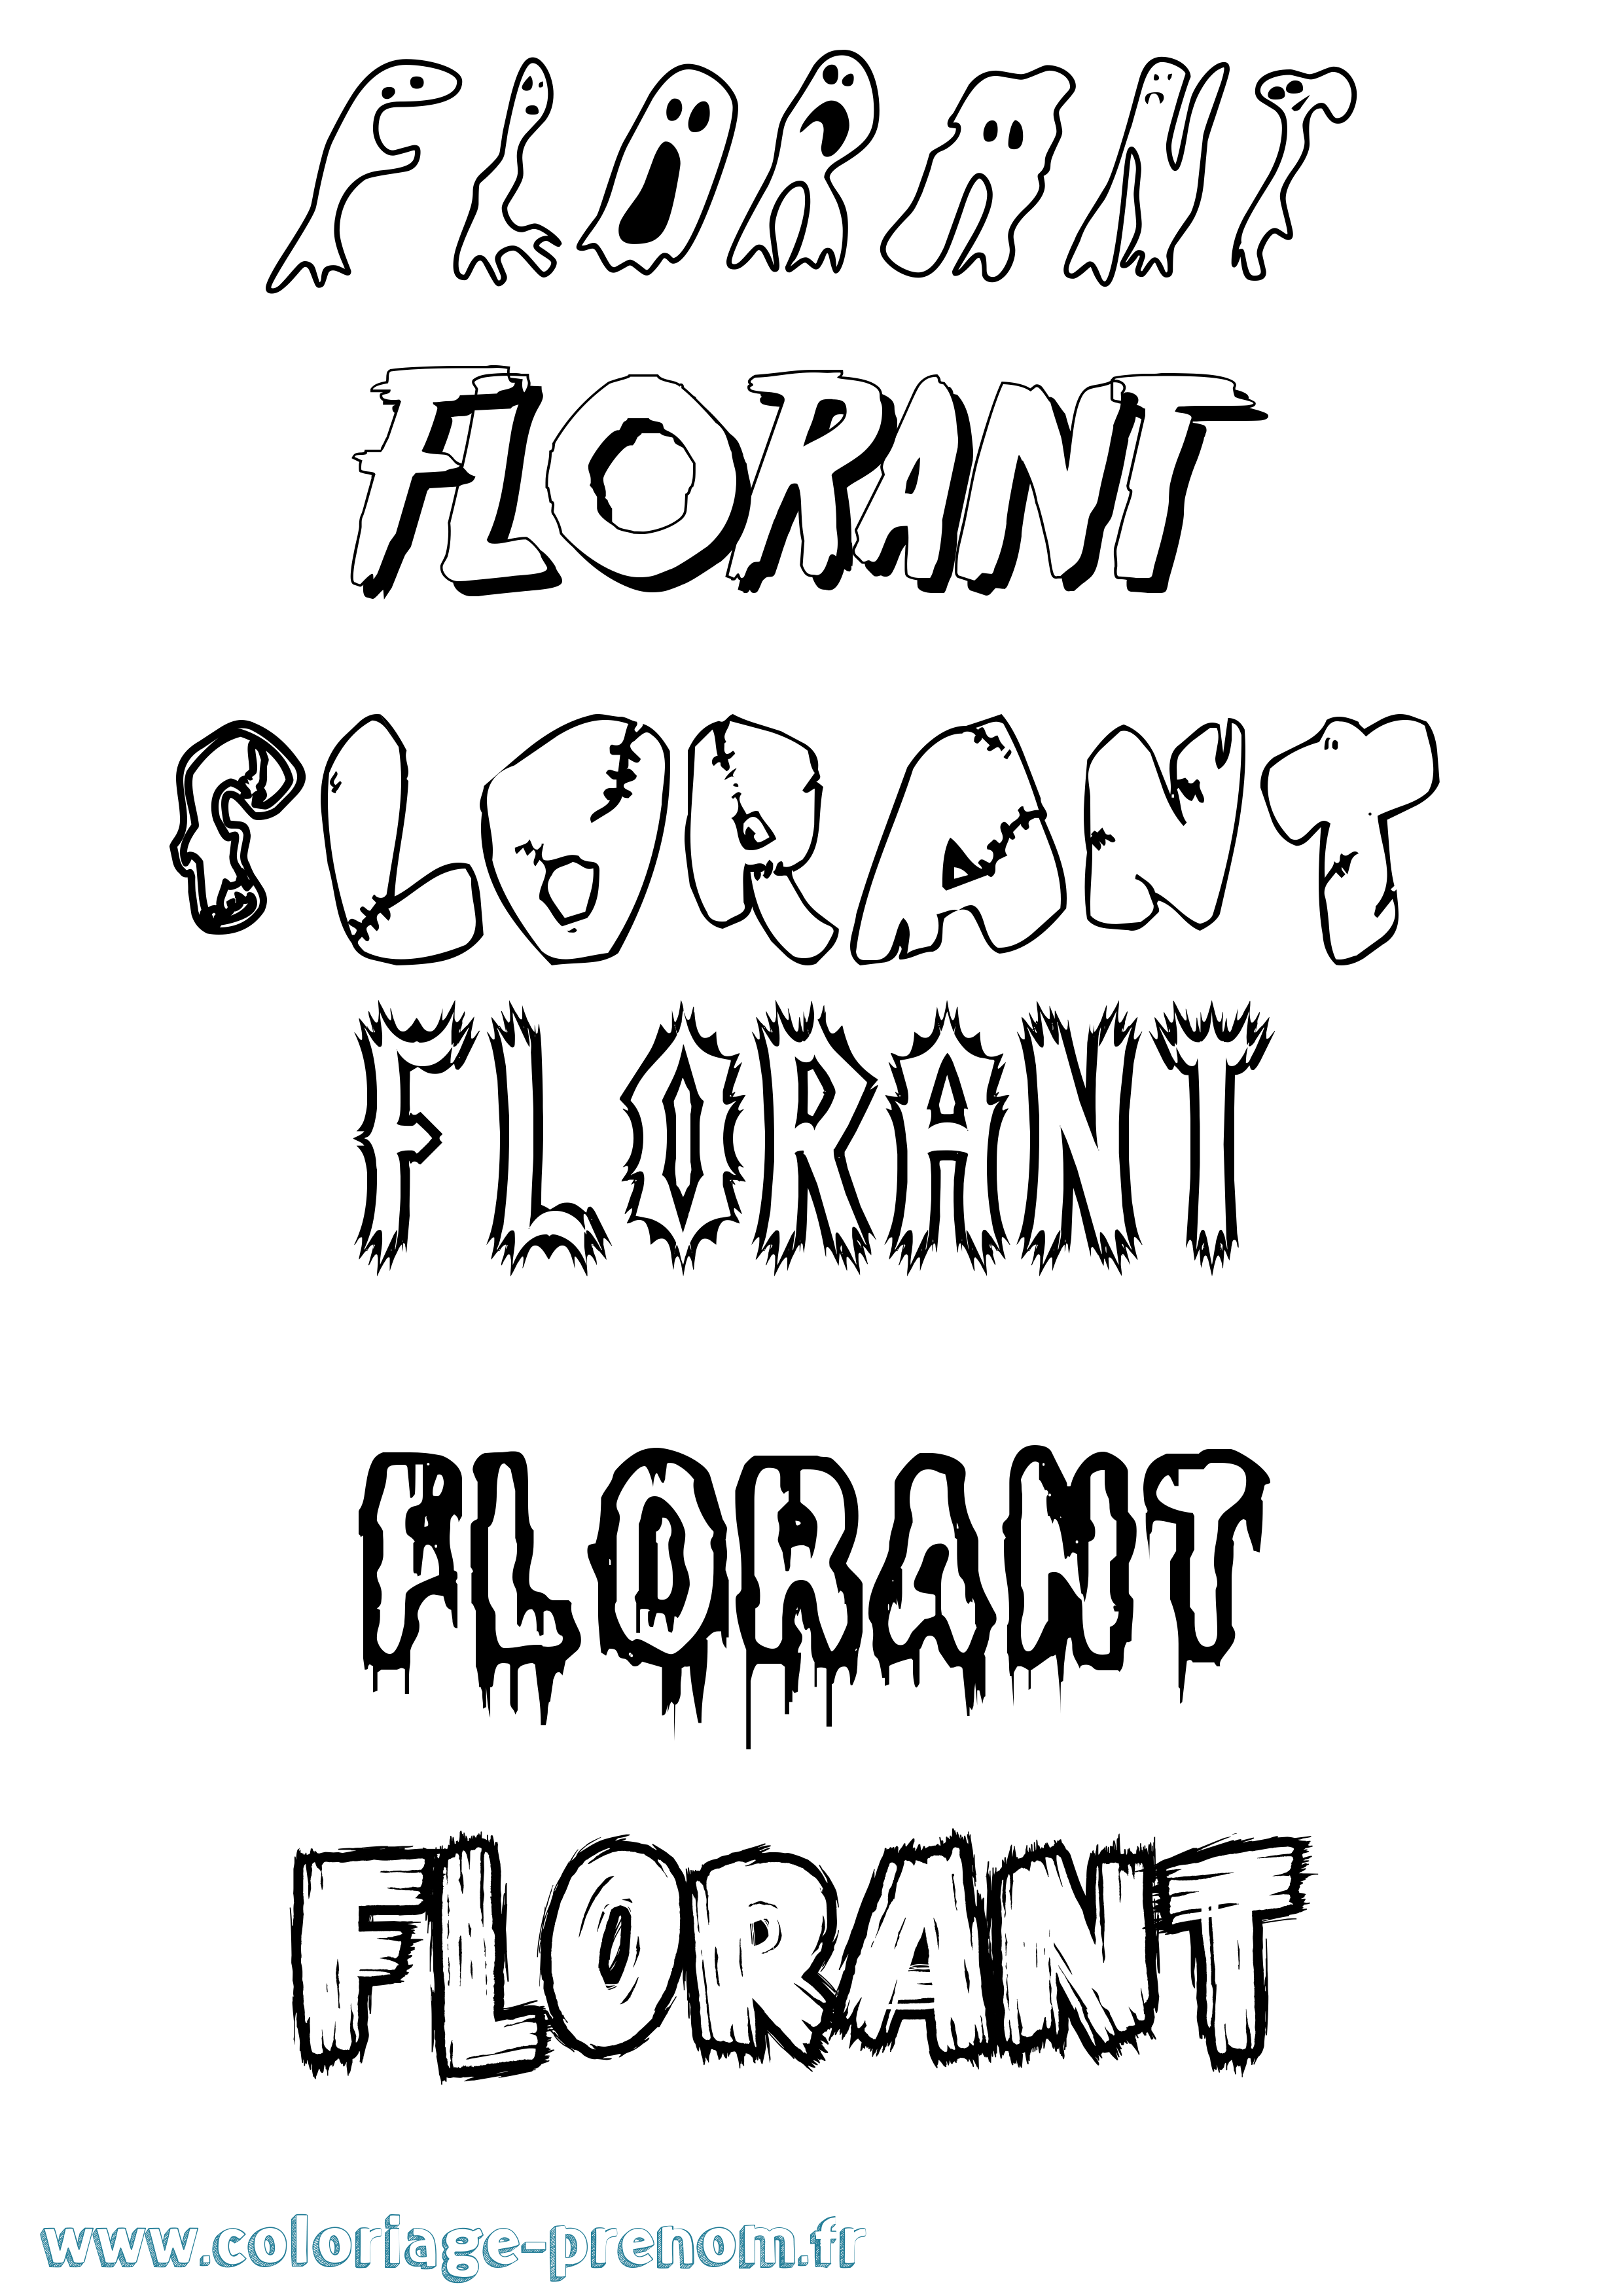 Coloriage prénom Florant Frisson